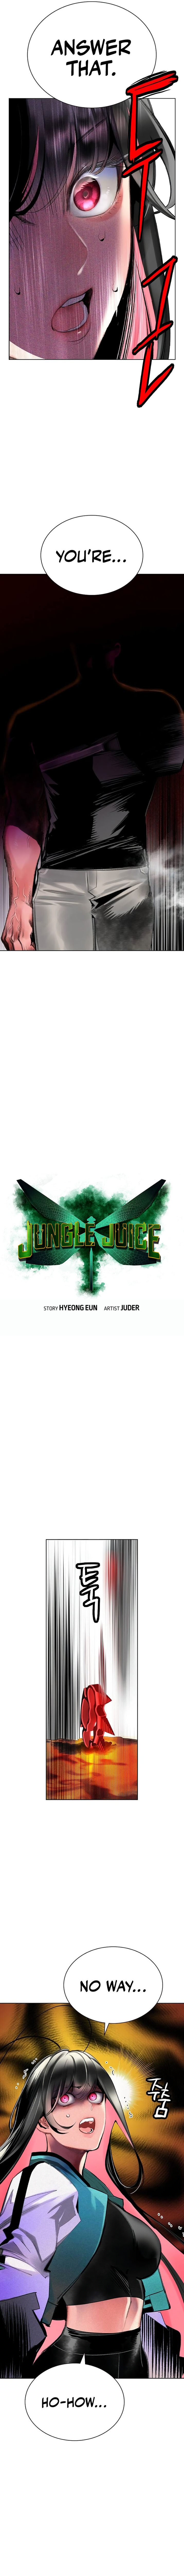 Jungle Juice 123 3